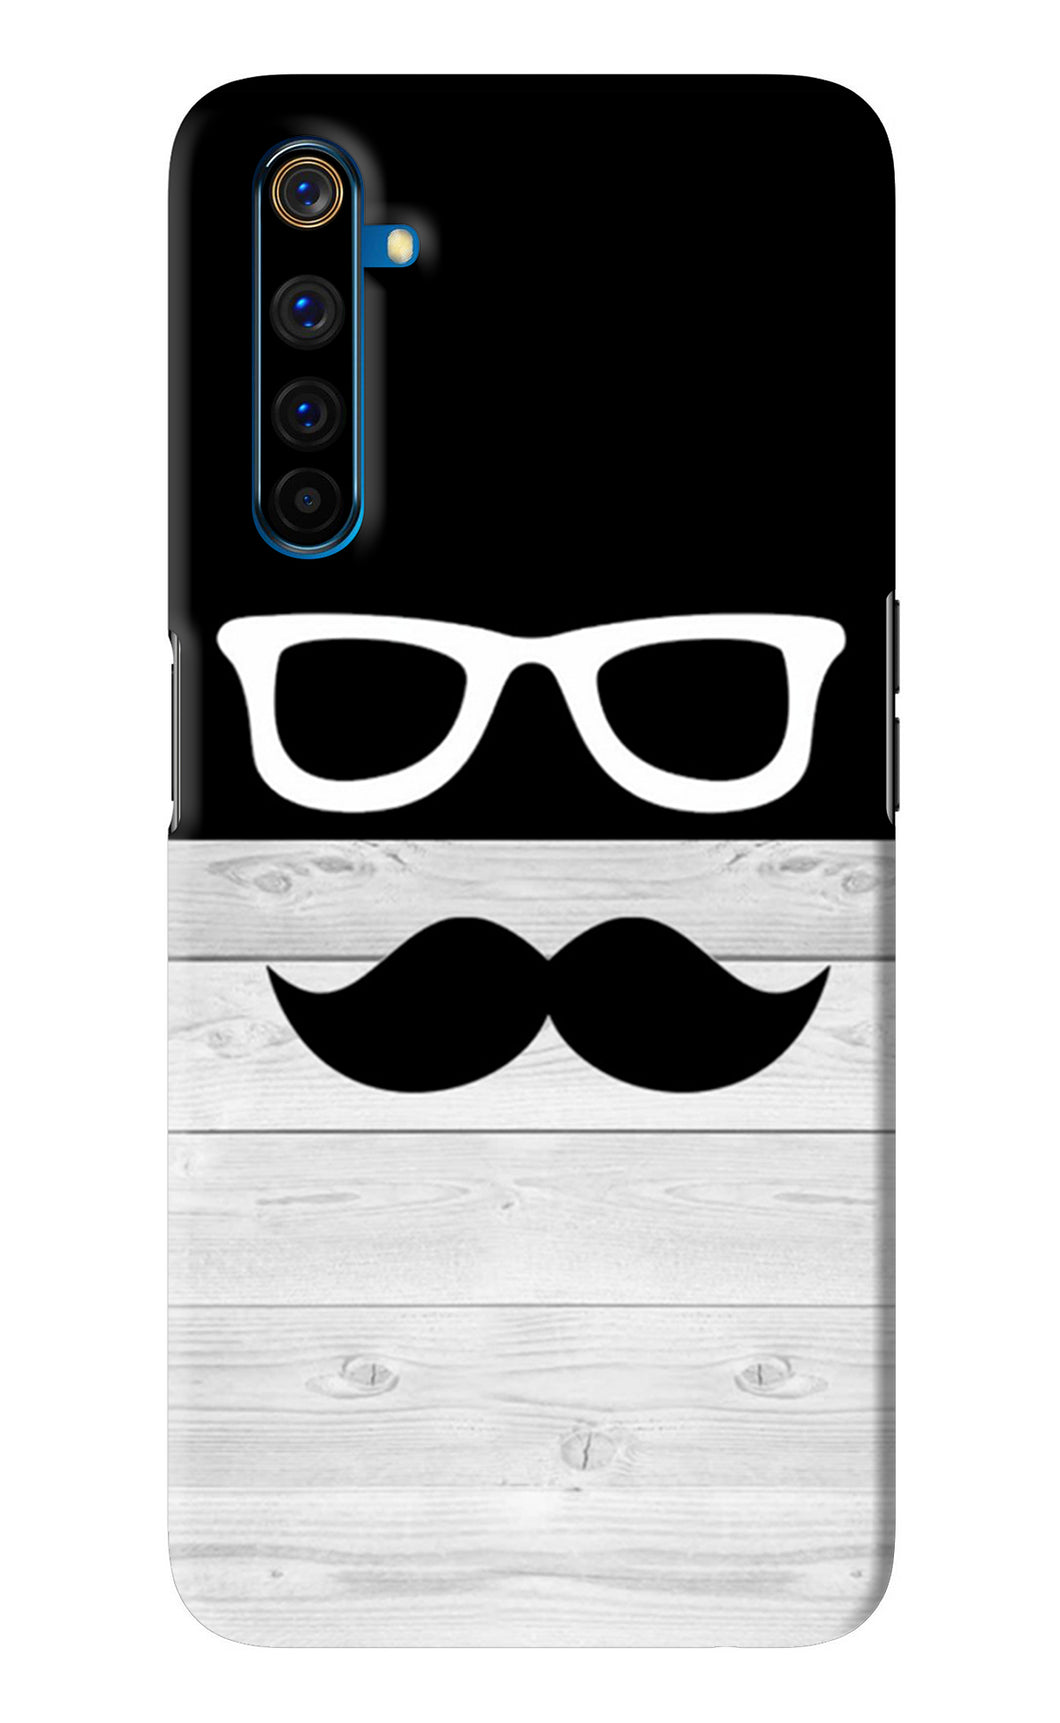 Mustache Realme 6 Pro Back Skin Wrap